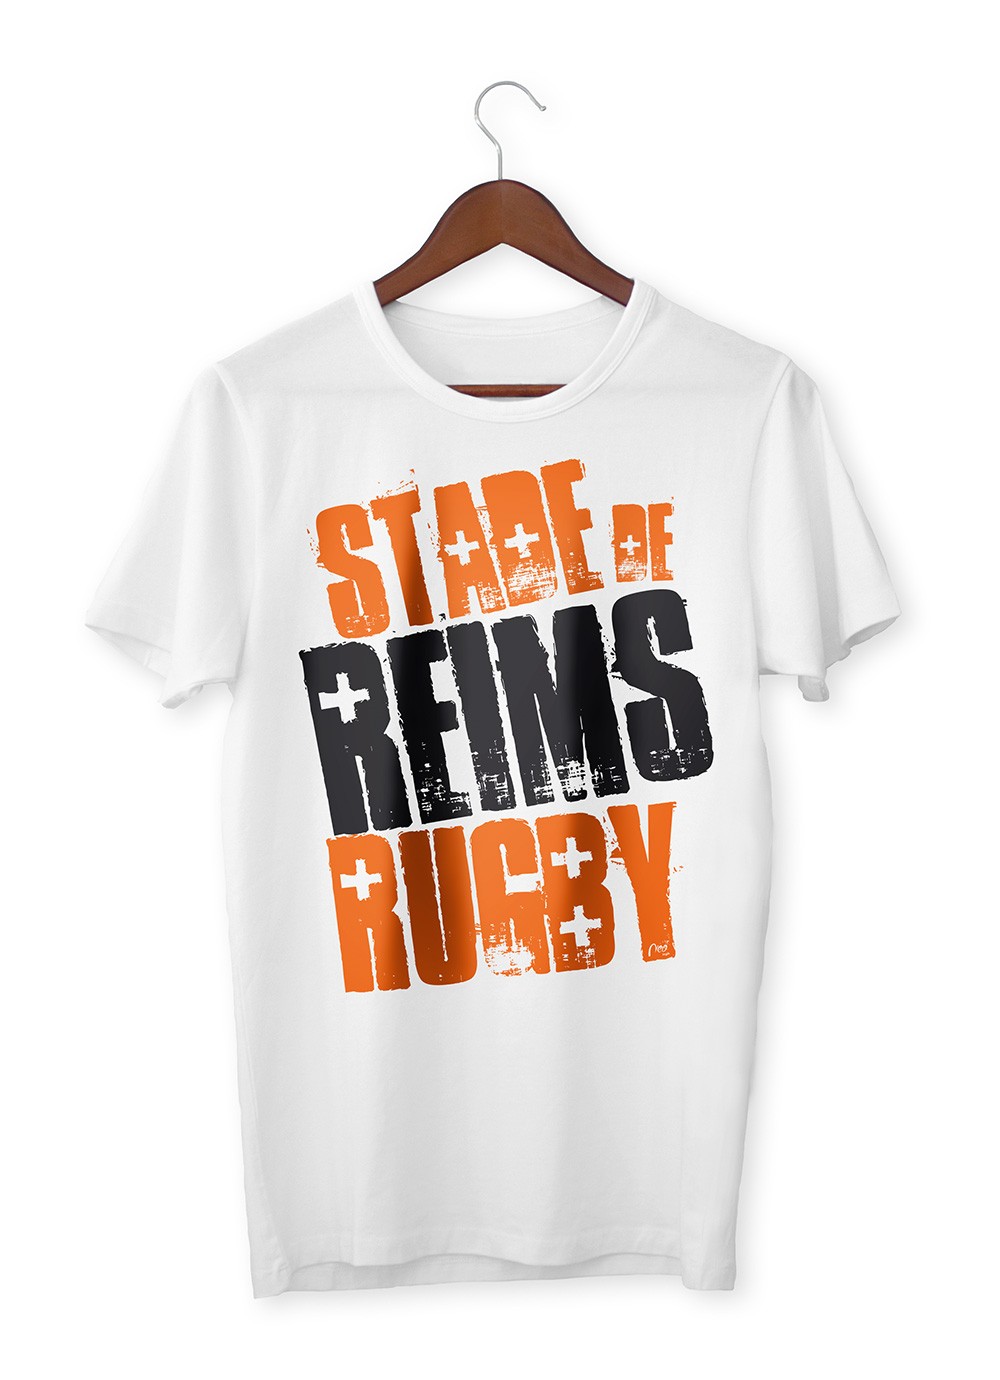 T-shirt homme Stade de Reims Rugby - Shogun